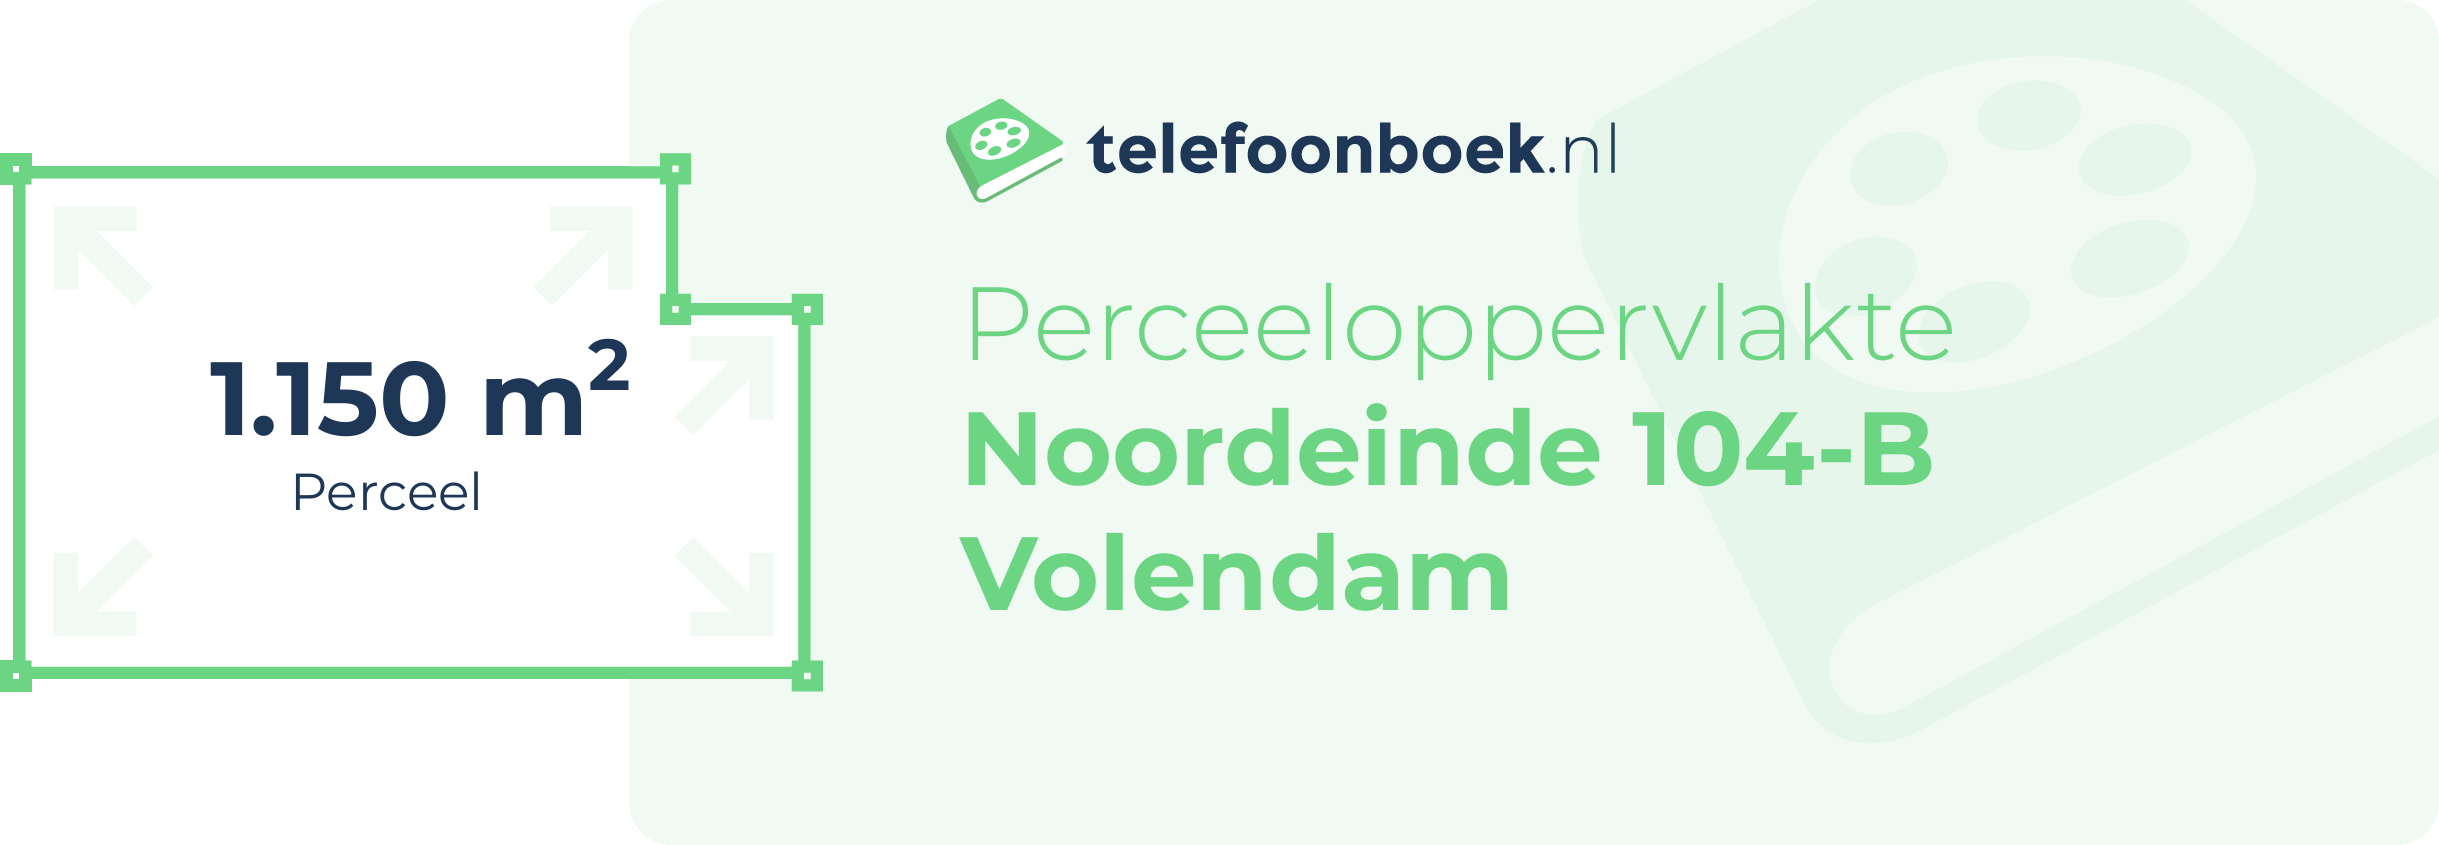 Perceeloppervlakte Noordeinde 104-B Volendam